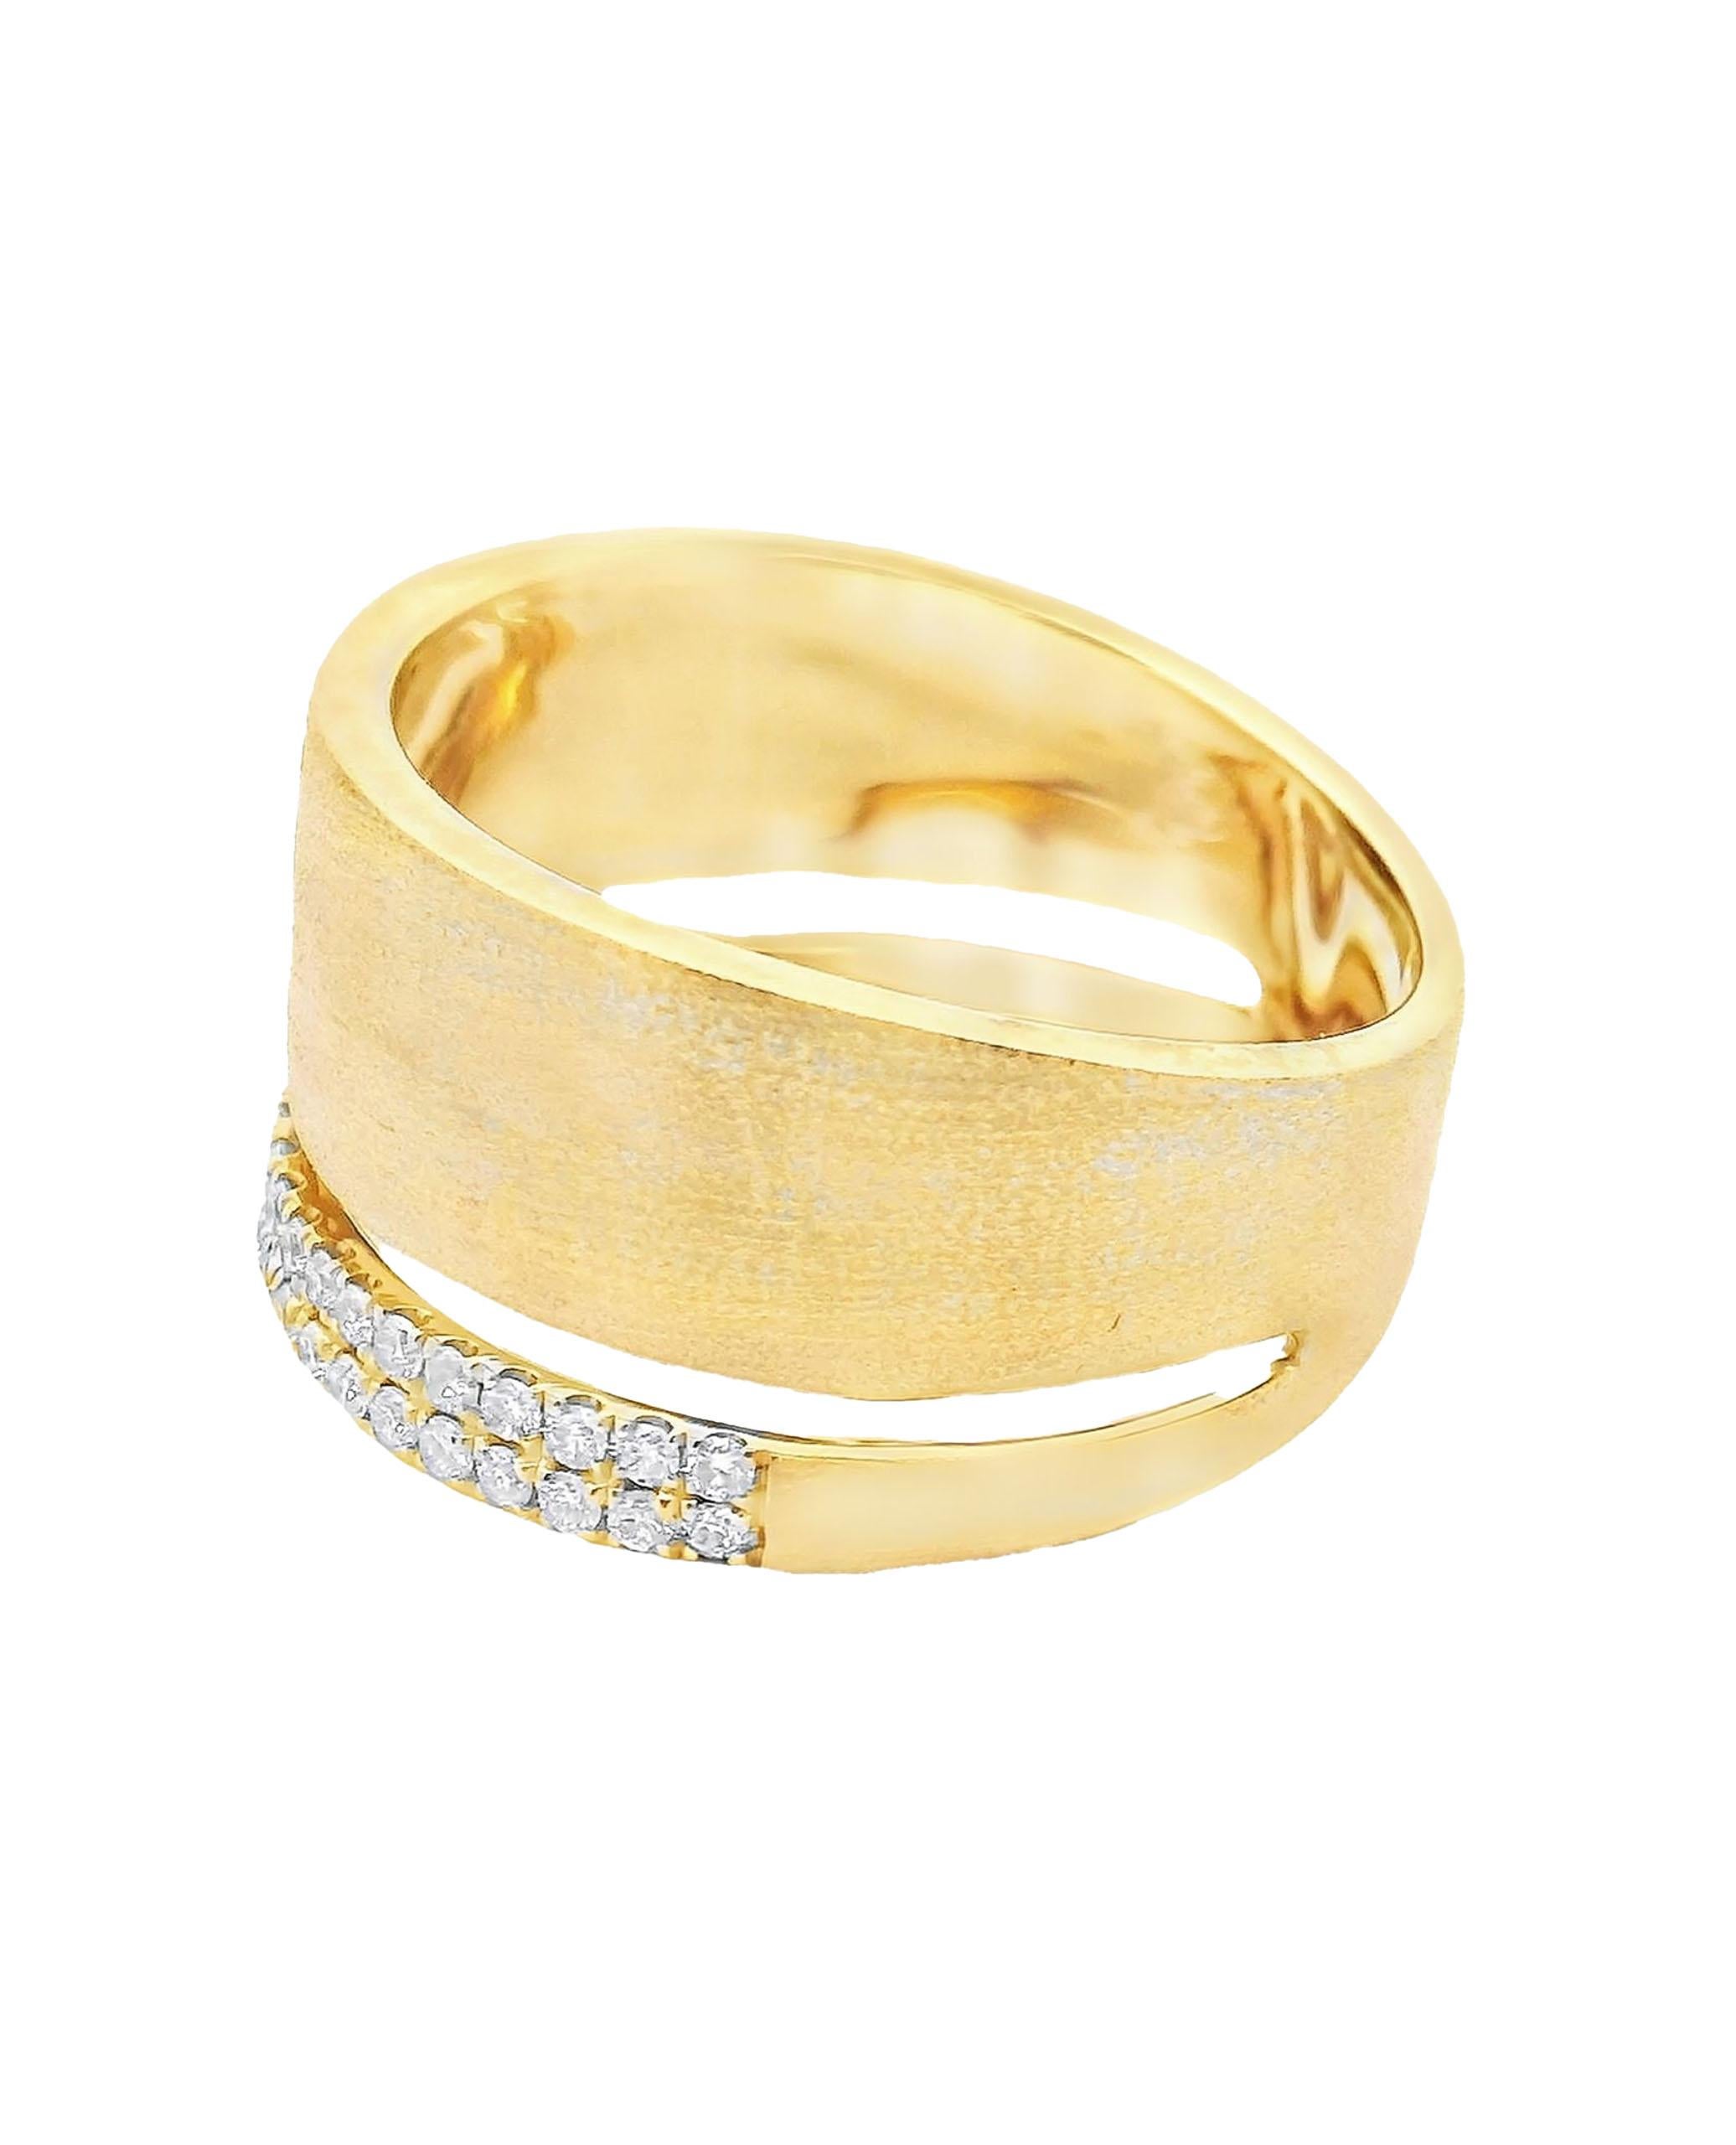 Bague large en or jaune 18 carats avec finition mate et diamants ronds de taille brillant pesant 0,27 carats au total. 

- Taille du doigt 6.75
- Les diamants sont de couleur H/I et de pureté SI.